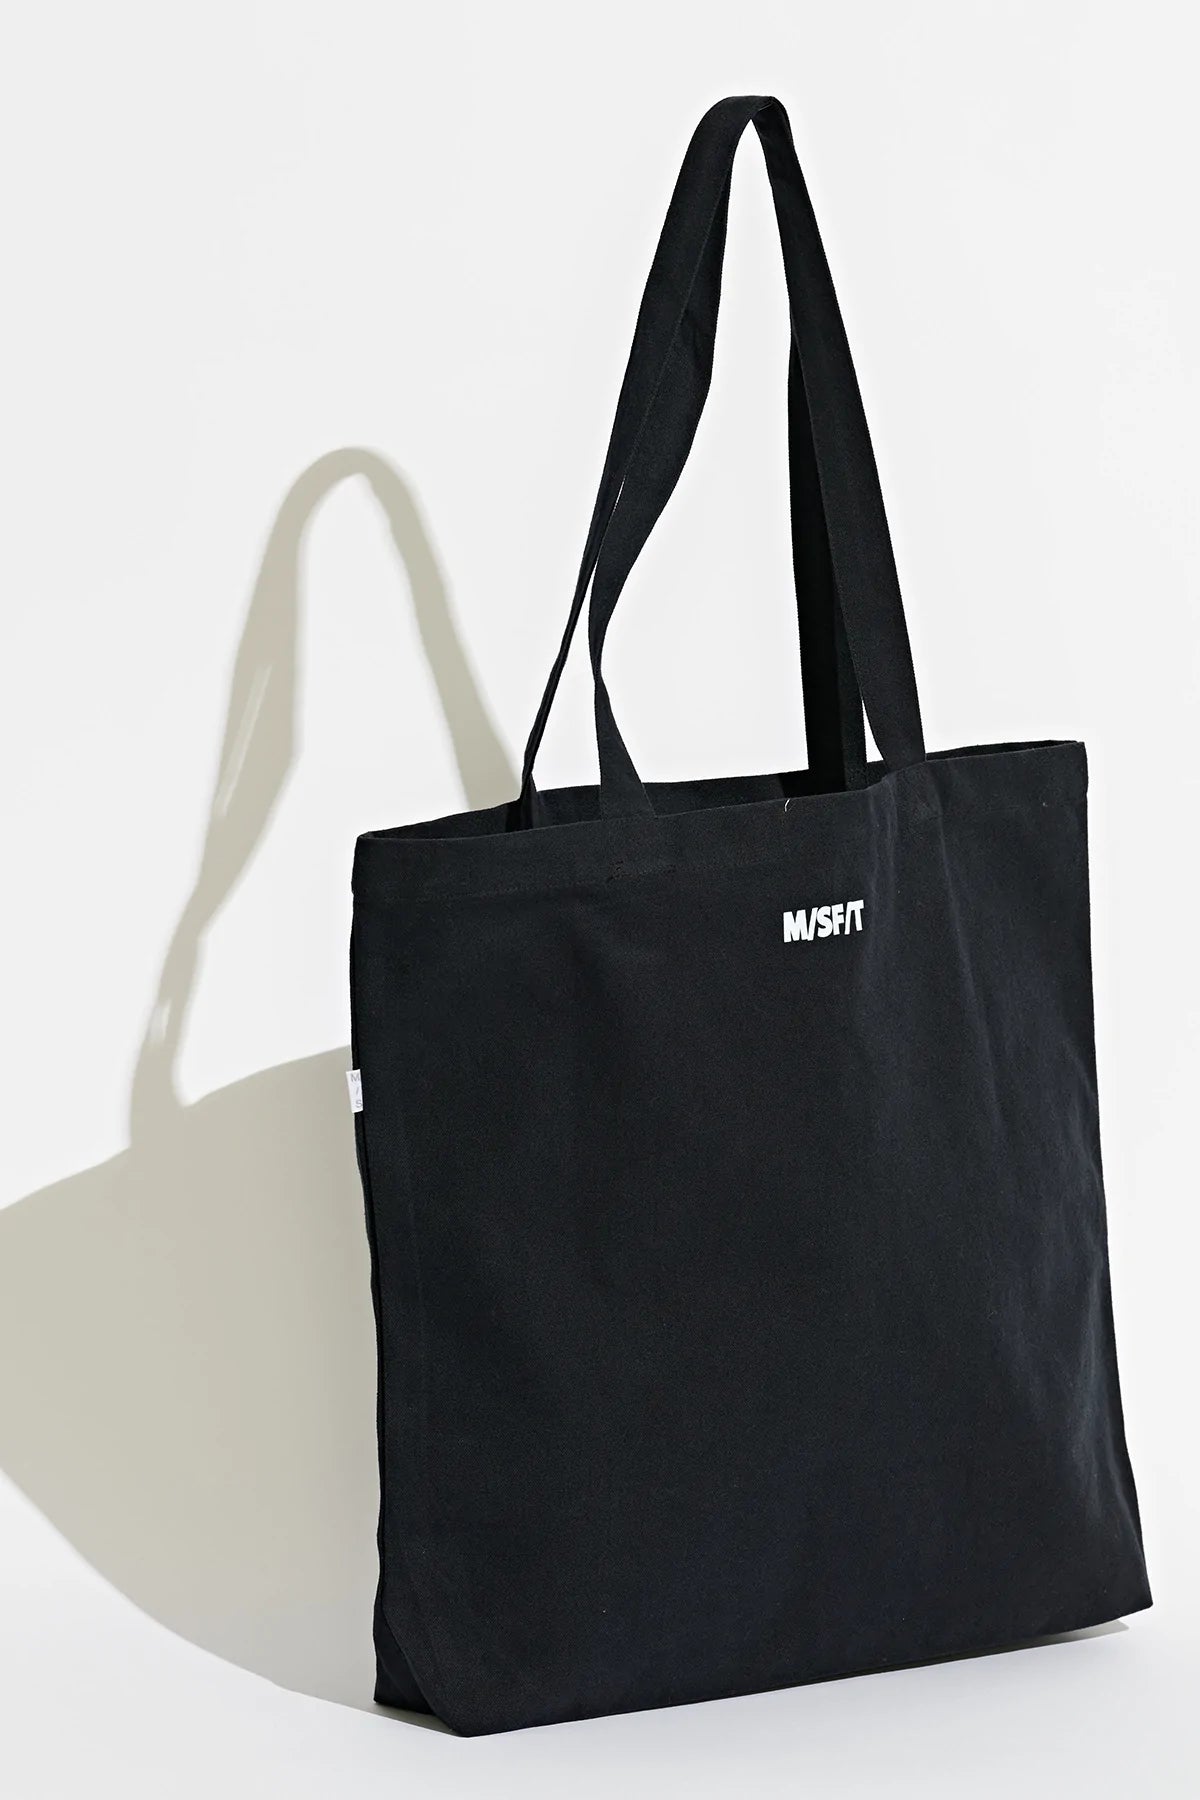 MISFIT // Future Tote Bag